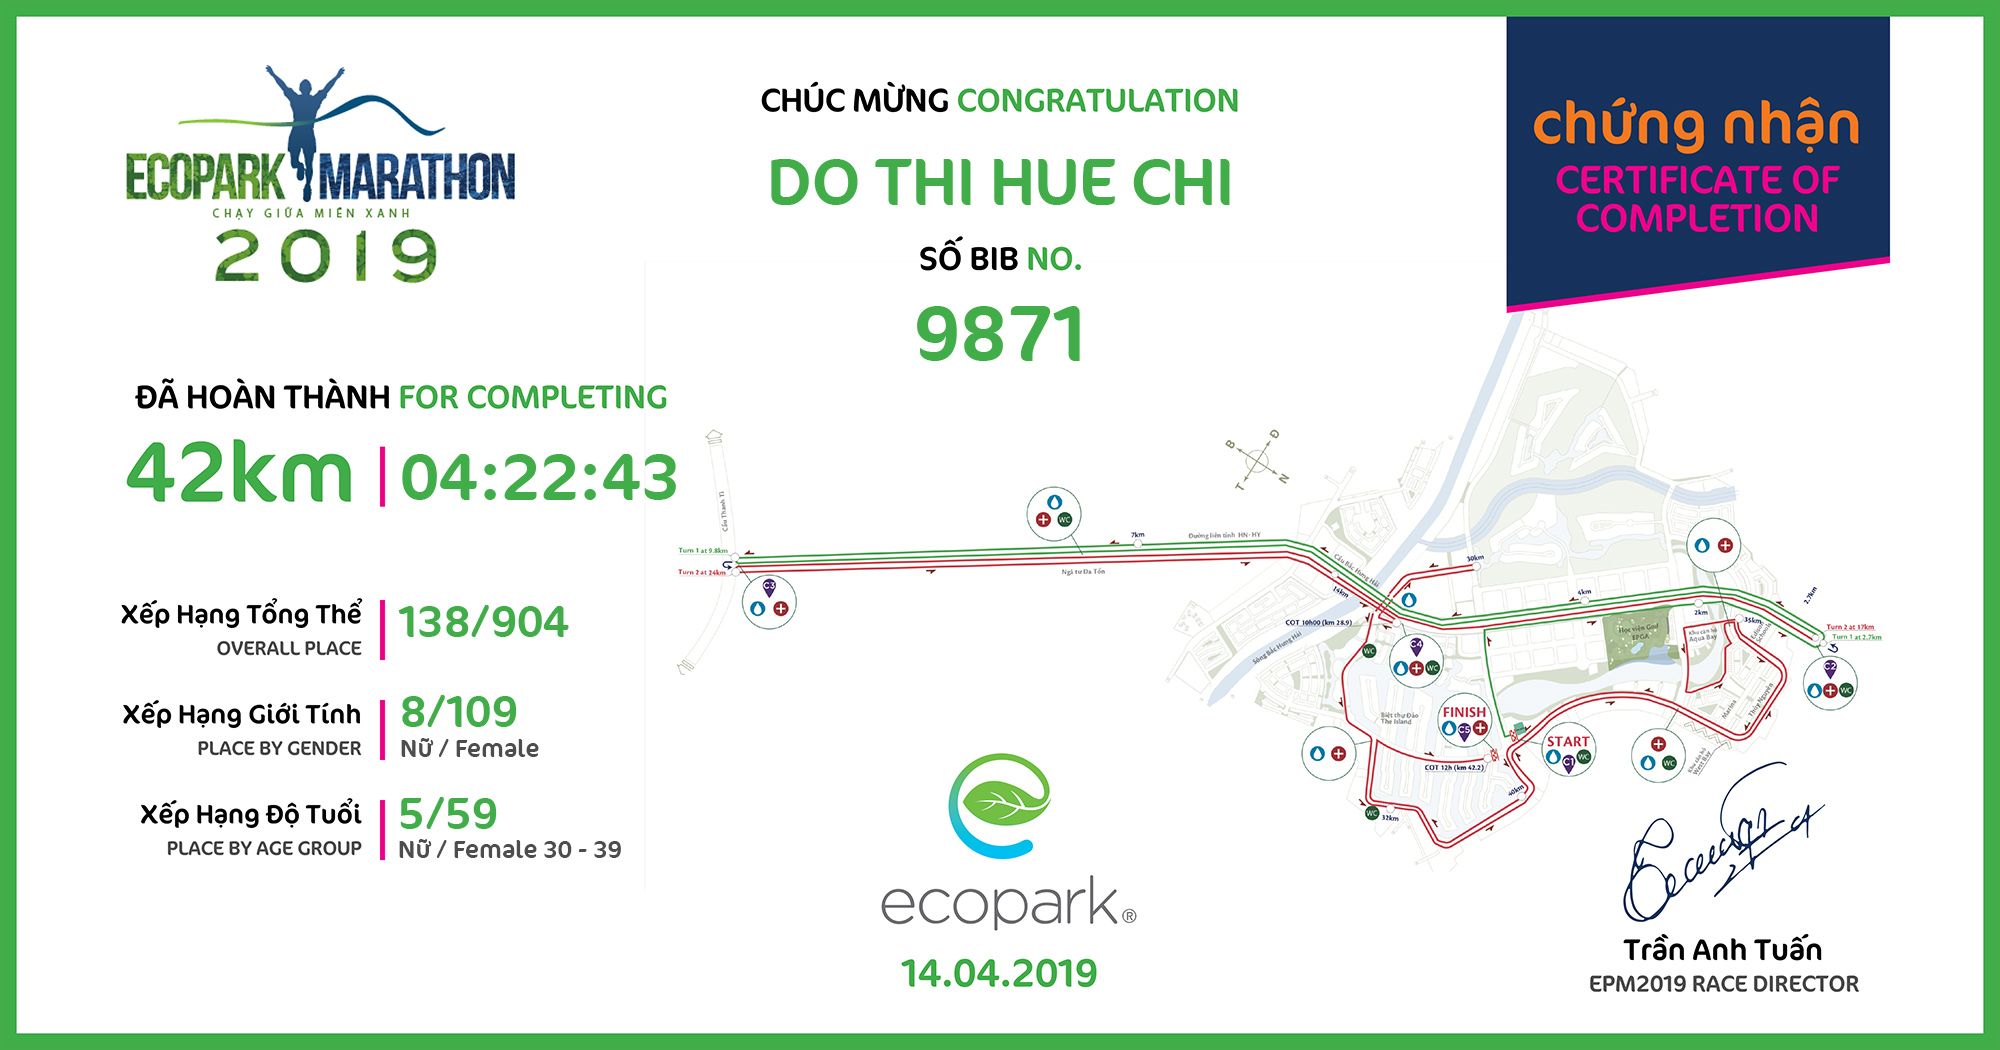 9871 - Do Thi Hue Chi